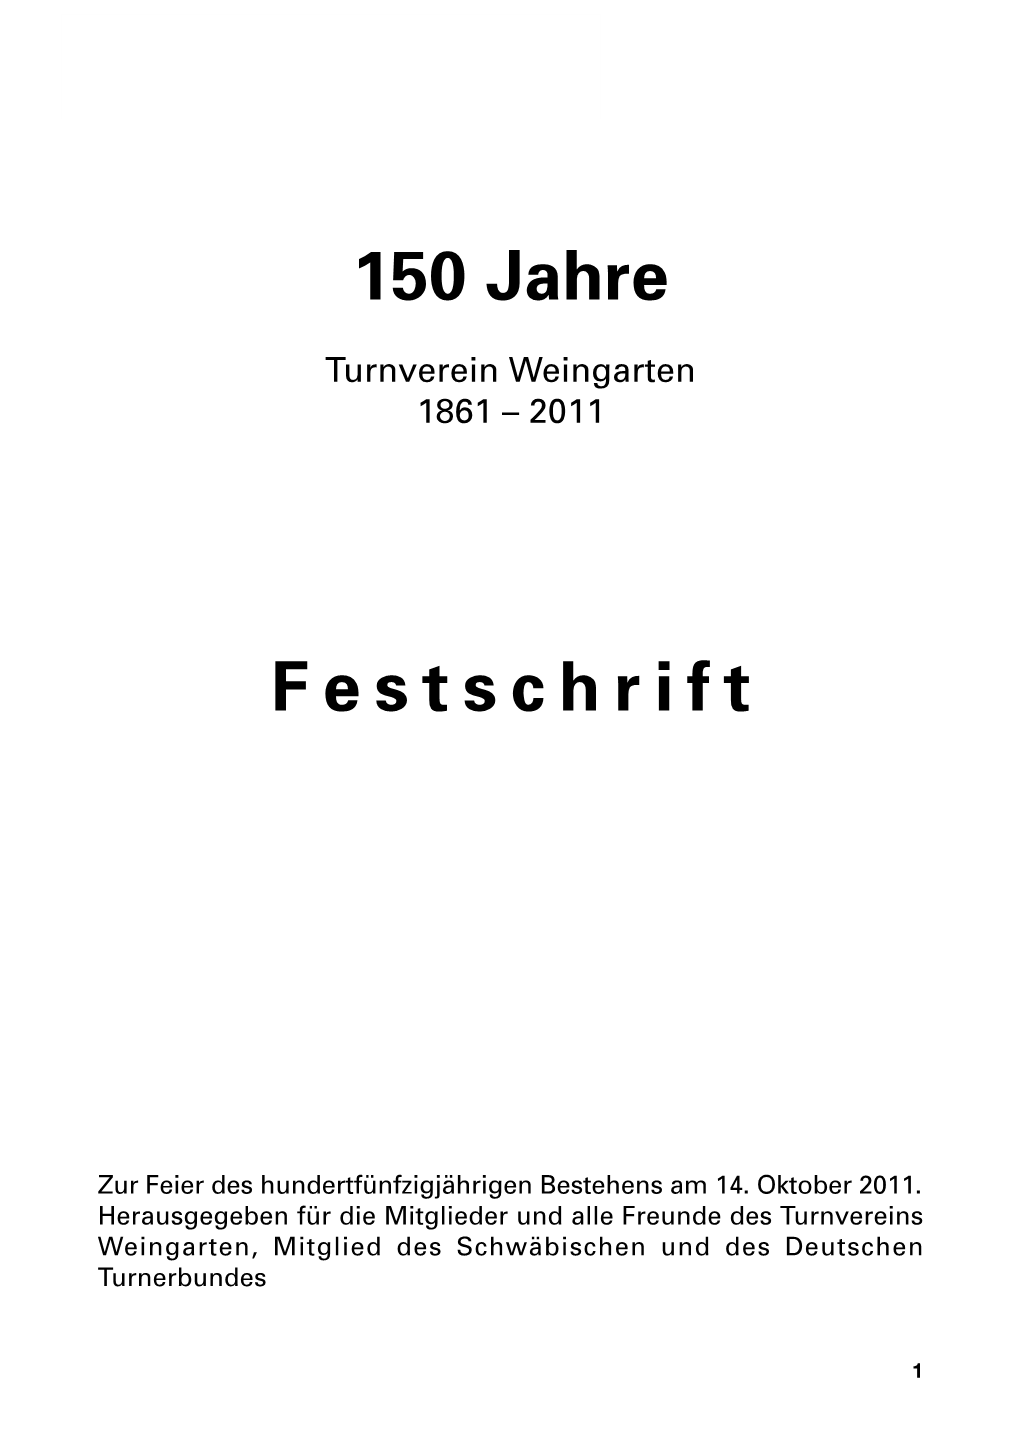 150 Jahre Festschrift